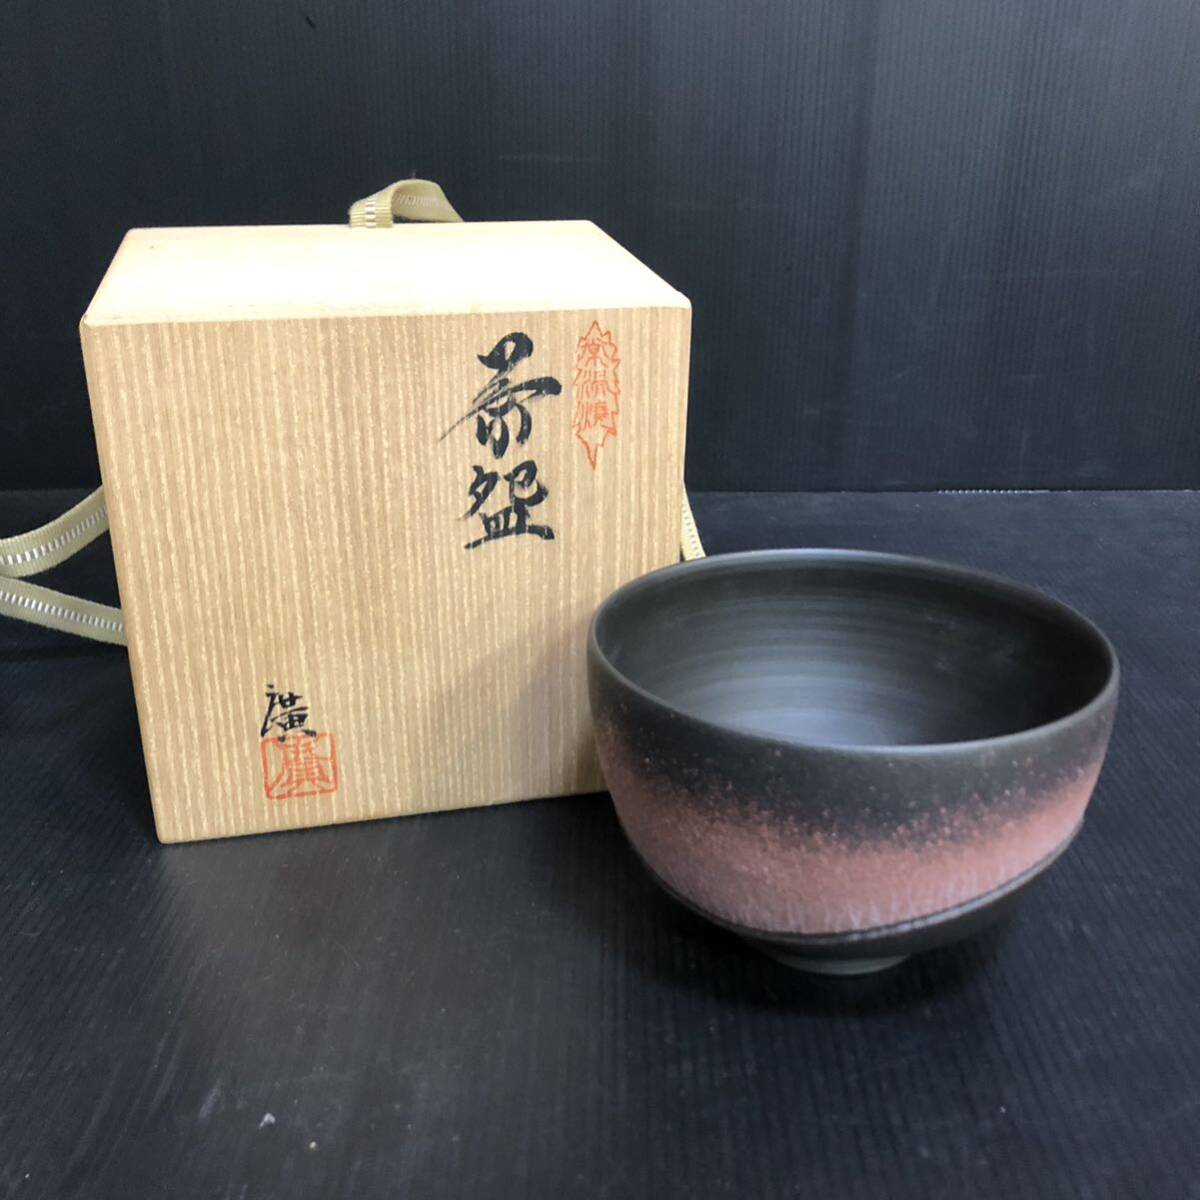  рекомендация 1 иен ~ Tokoname .. чашка чайная посуда чайная посуда зеленый чай . чайная церемония антиквариат товар керамика изделие прикладного искусства коллекция 1 иен старт 